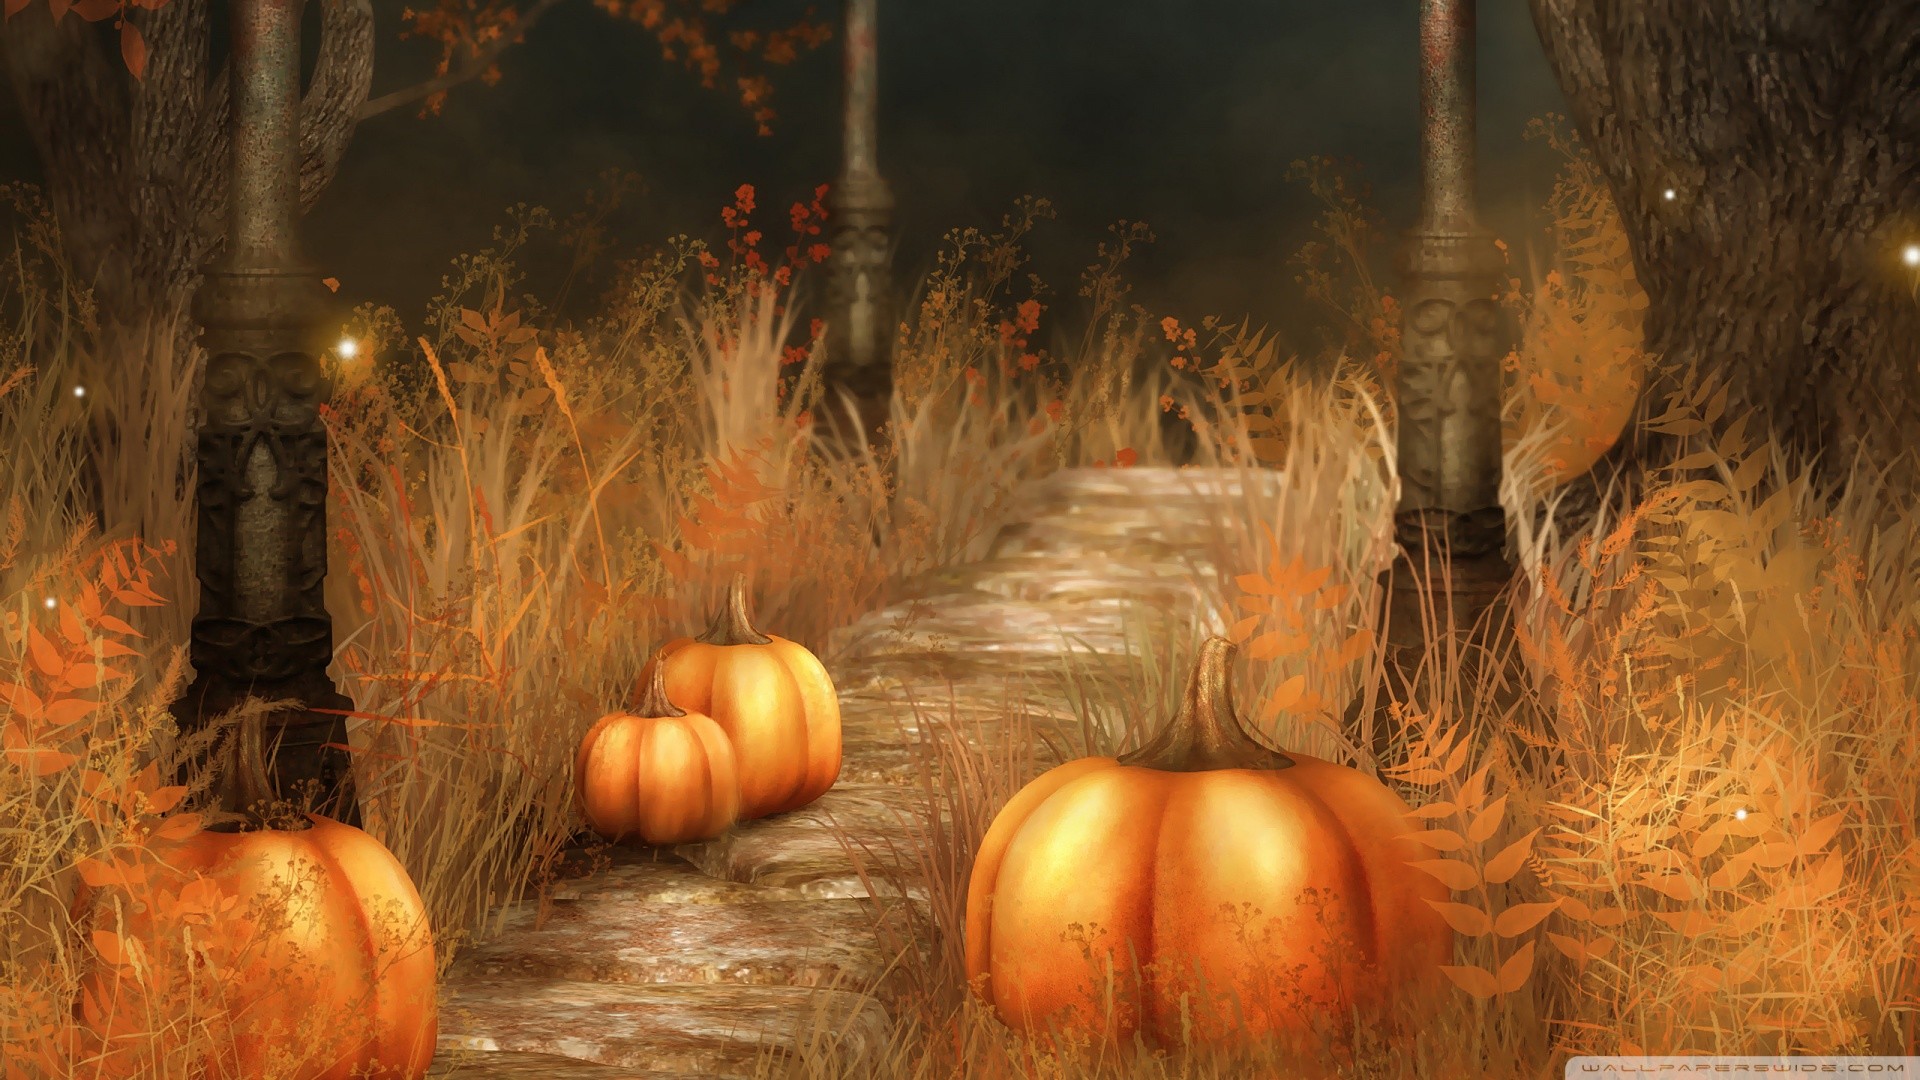 Cute Fall Pumpkins Wallpaper. Pumpkins Halloween Wallpaper Free Download